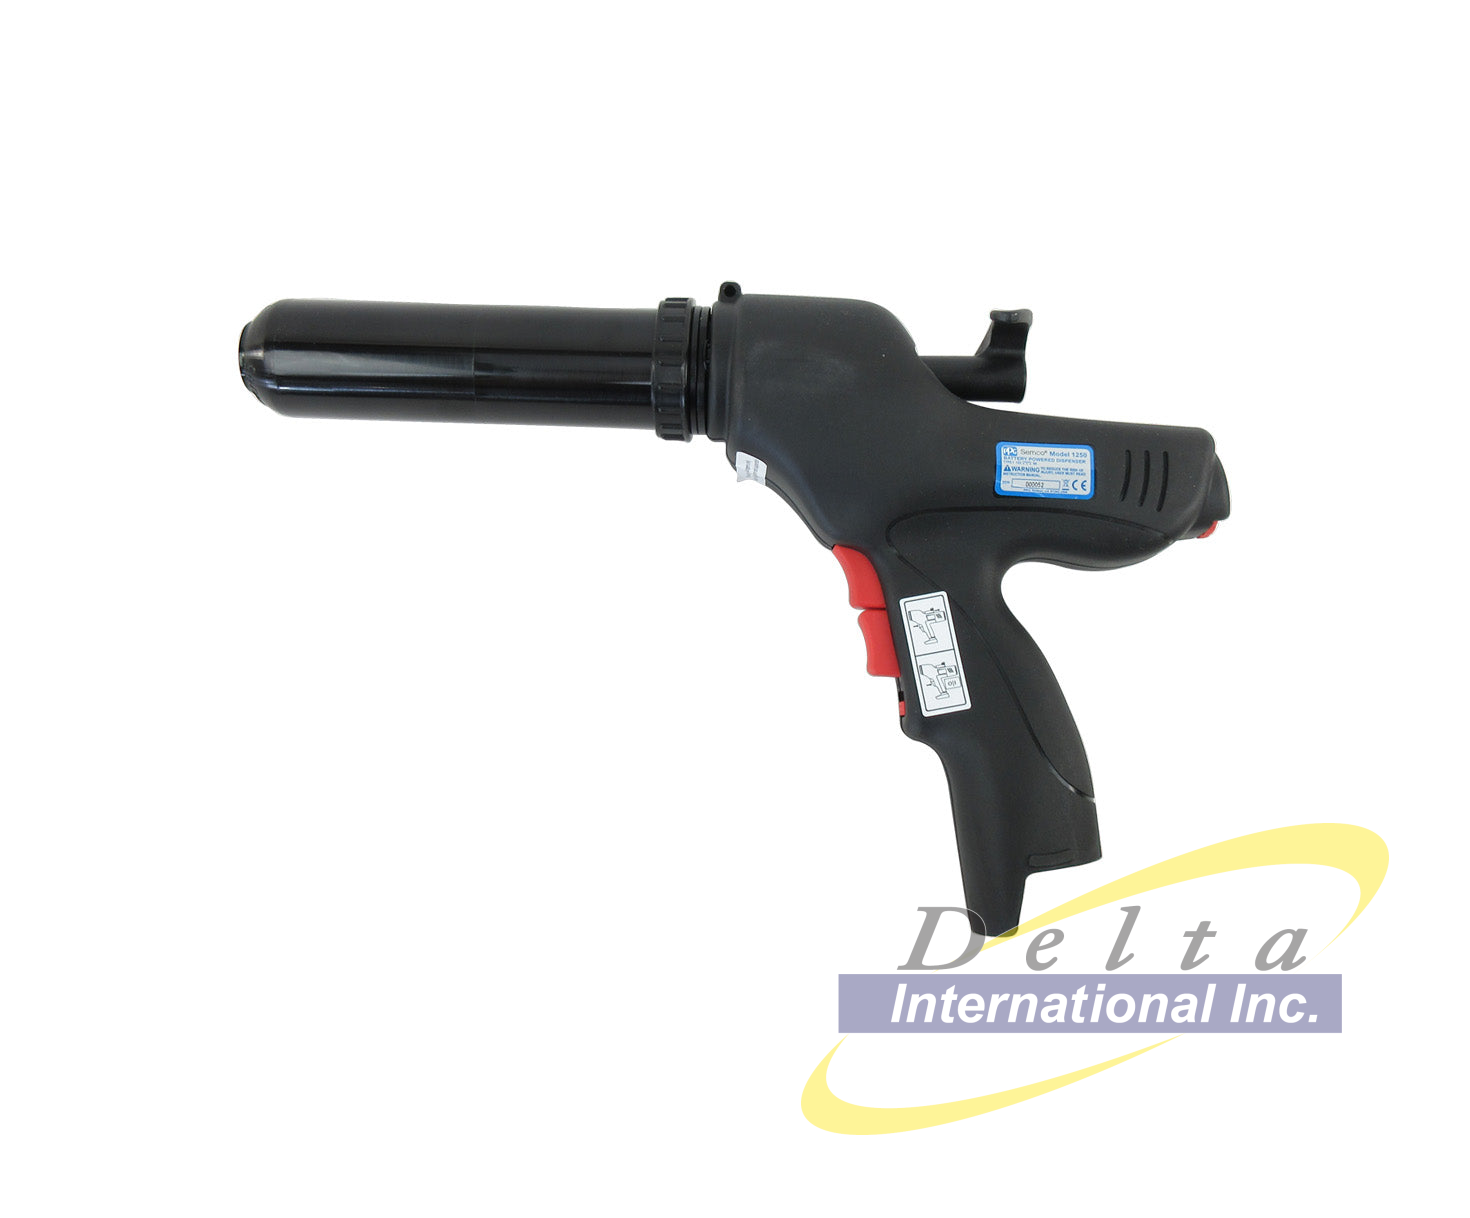 PPG Semco 235300 1250 Battery-Powered Sealant Dispensing Gun Kit